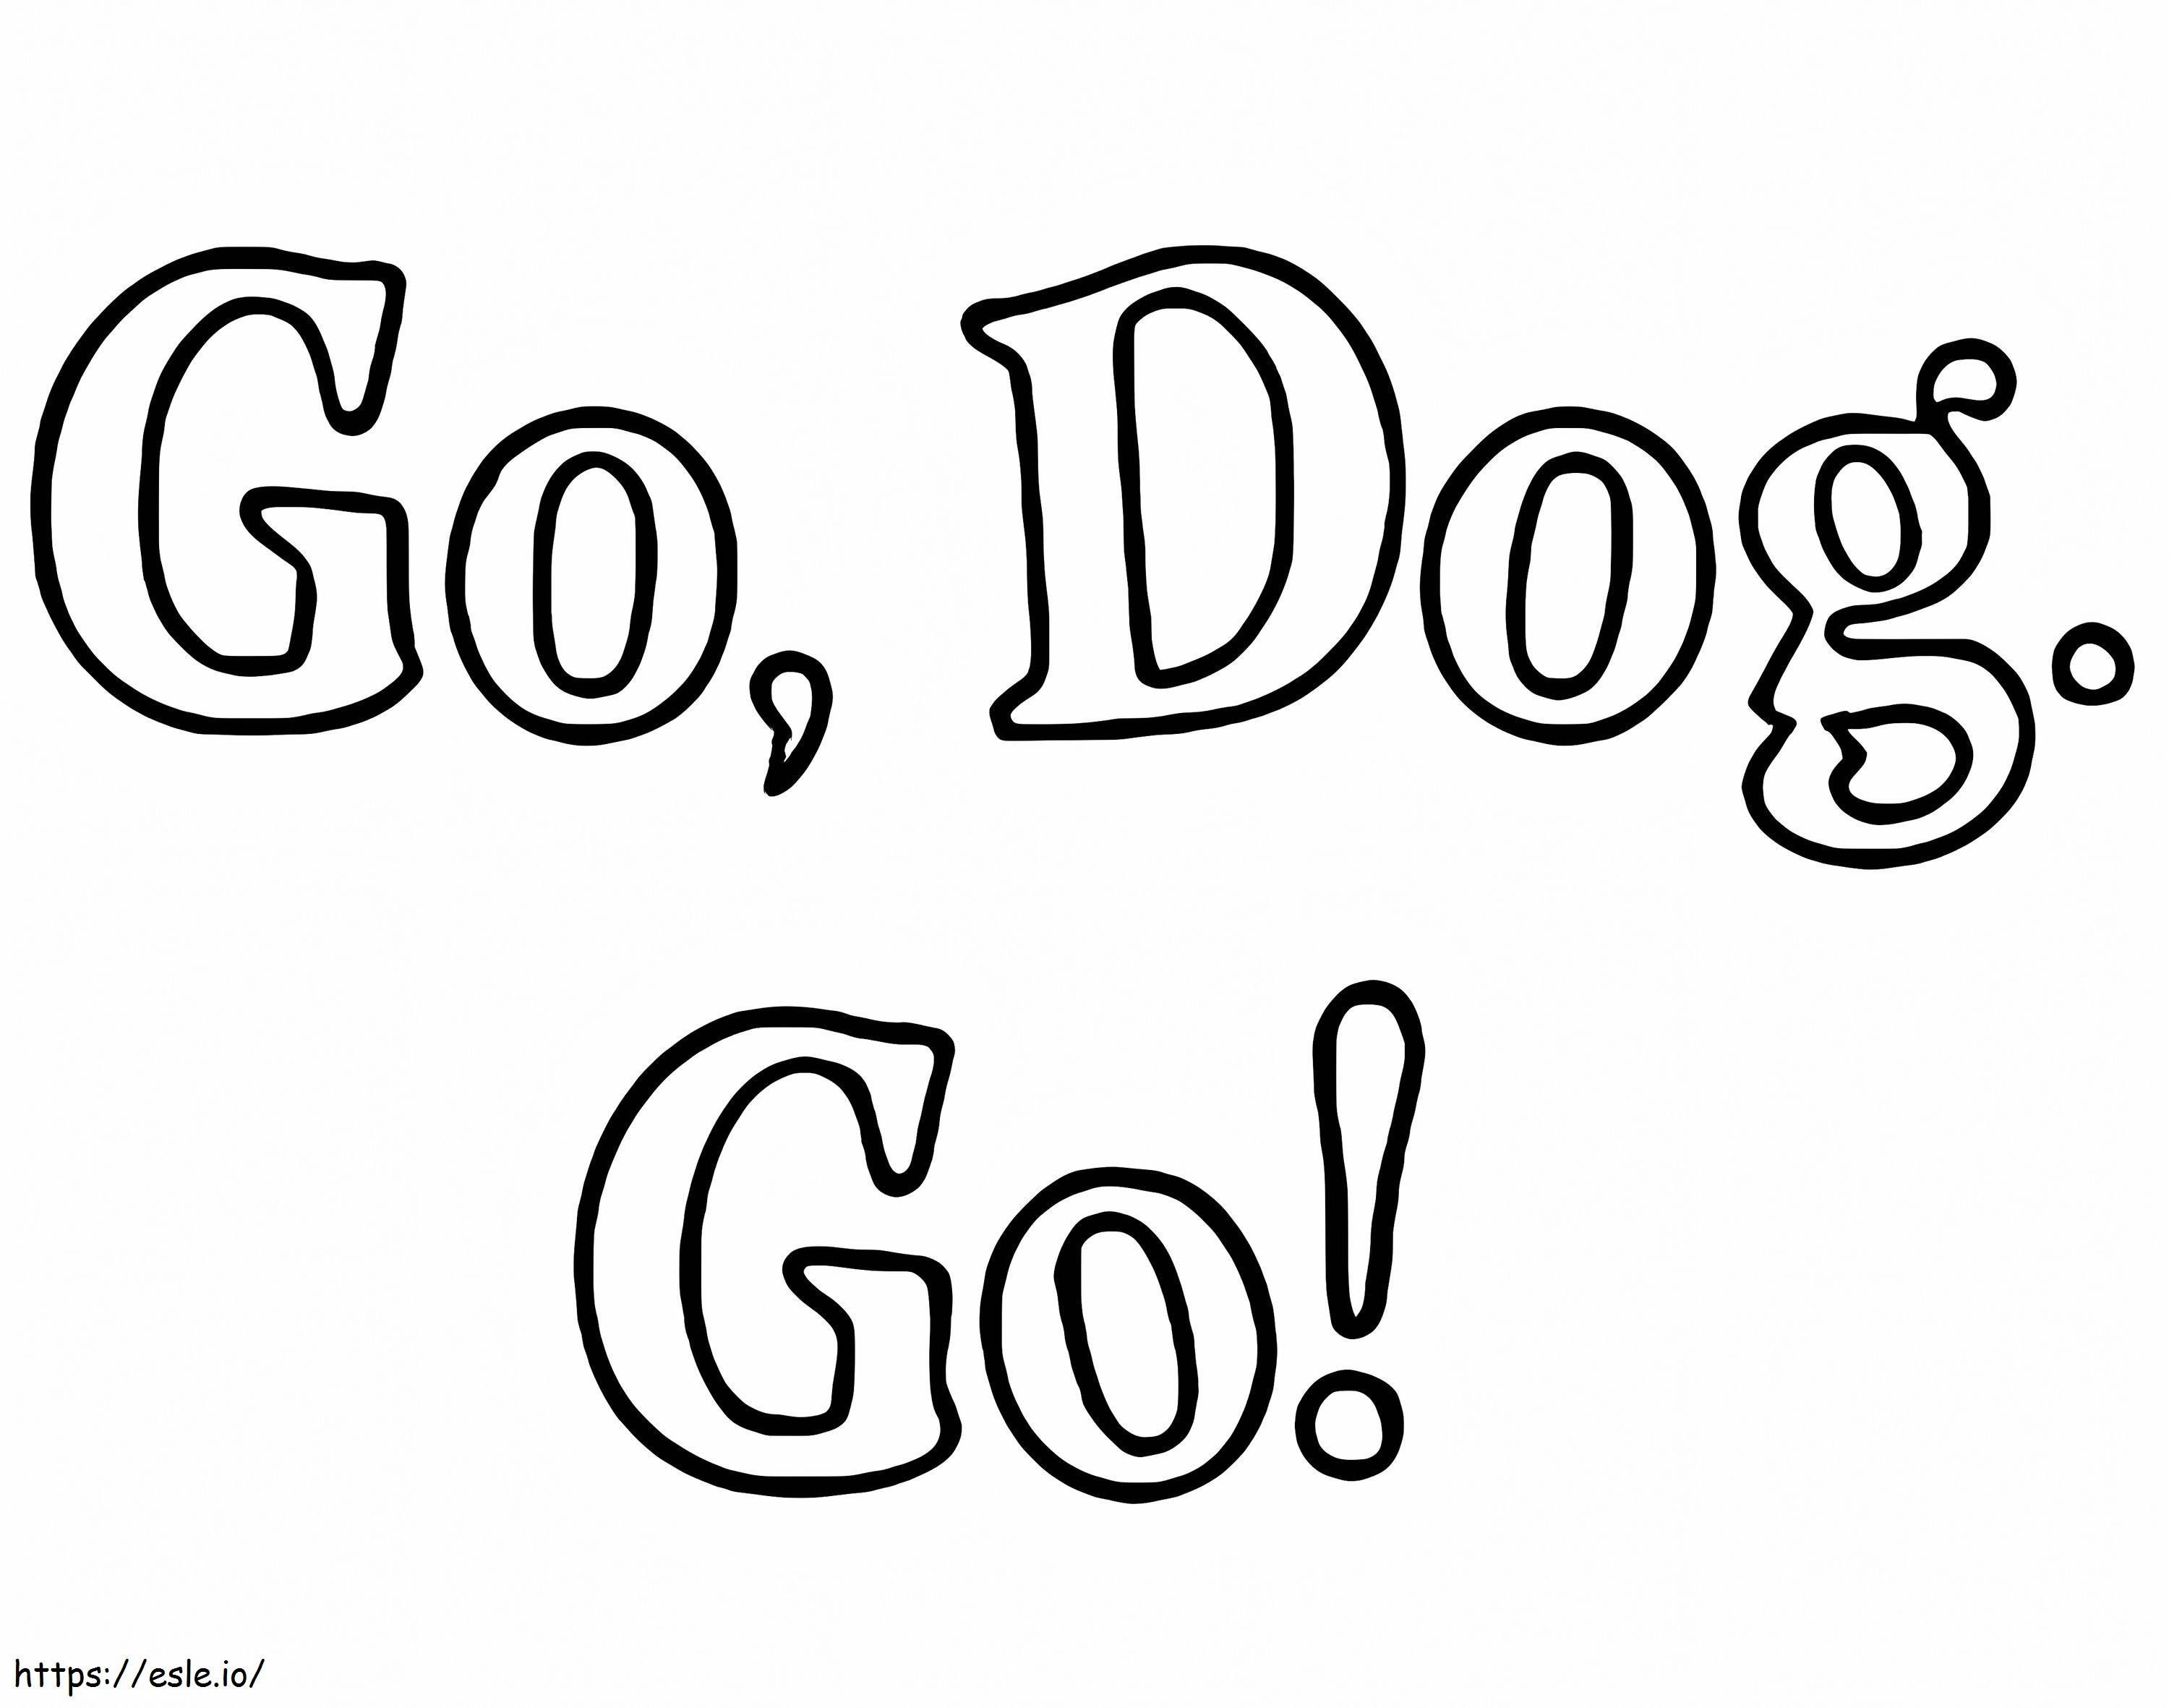 Go Dog Go-logo kleurplaat kleurplaat